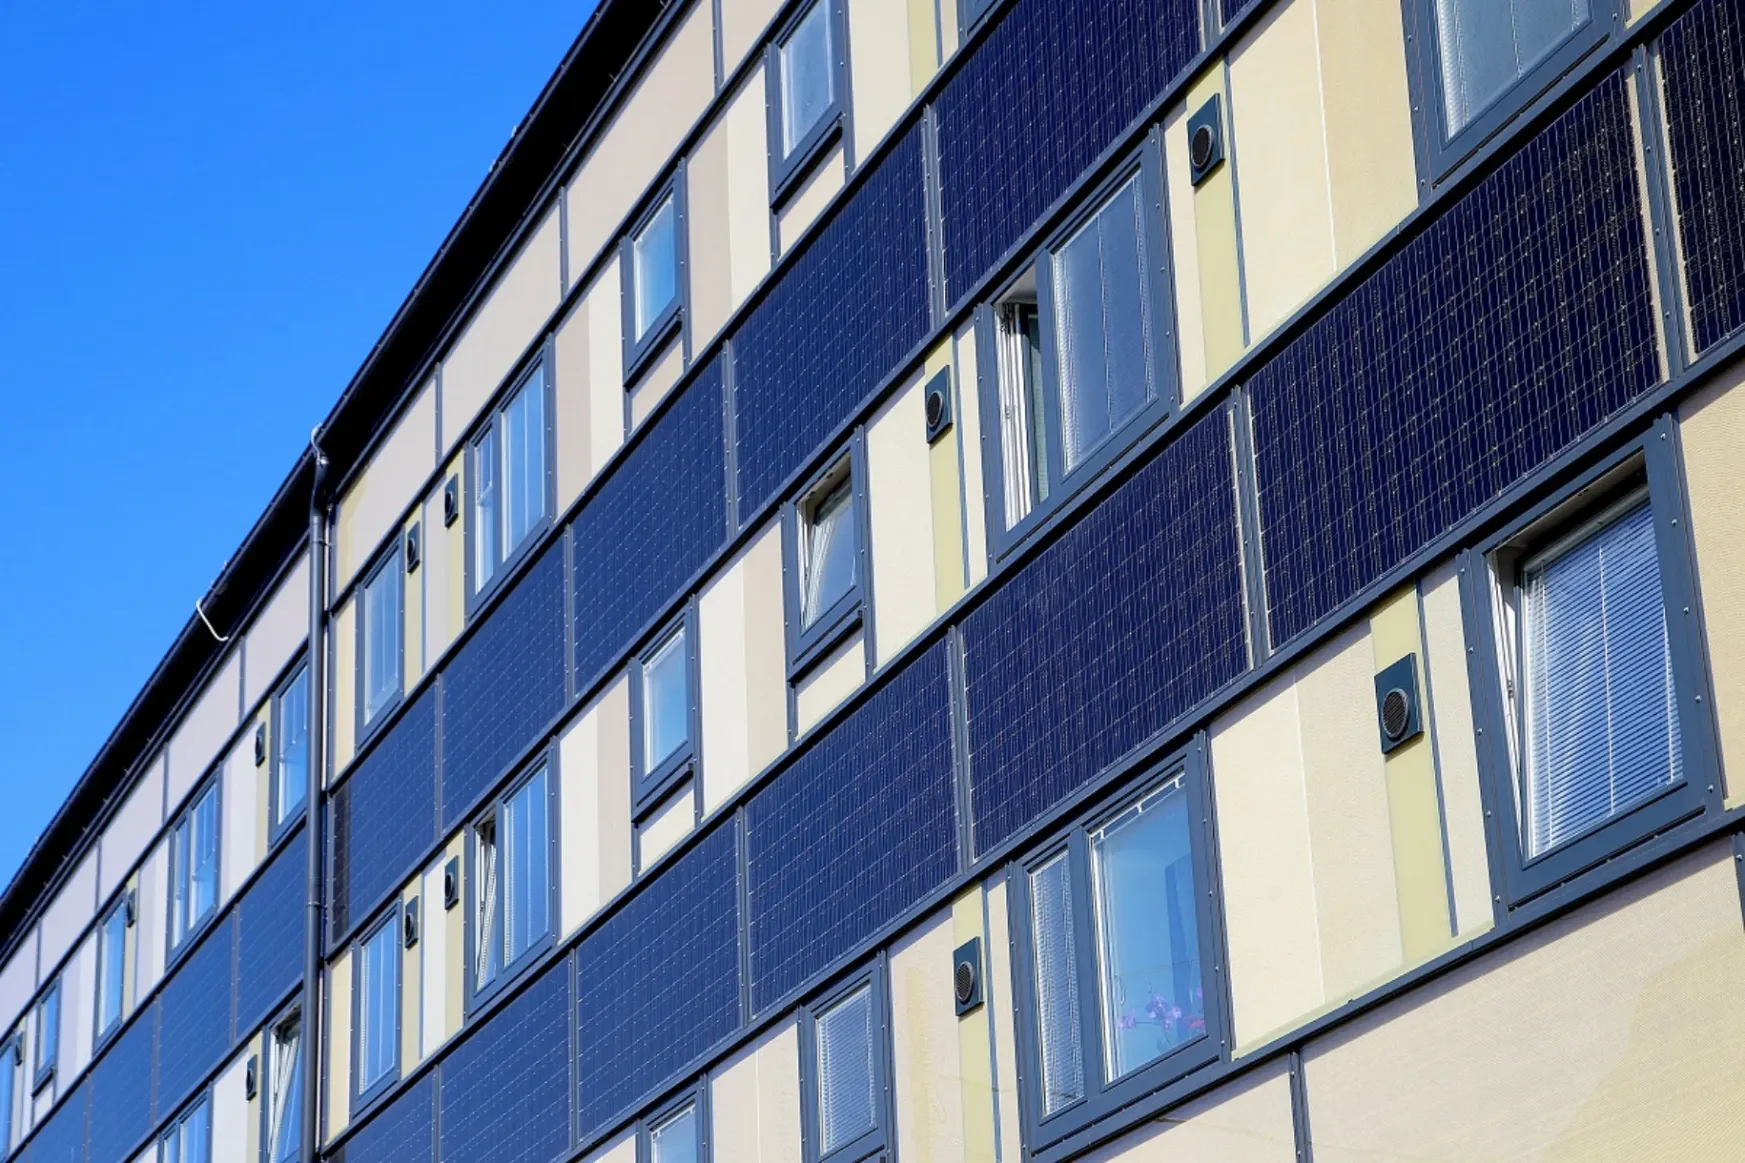 Bécsben már az önkormányzati lakások erkélyére is lehet napelemet szerelni